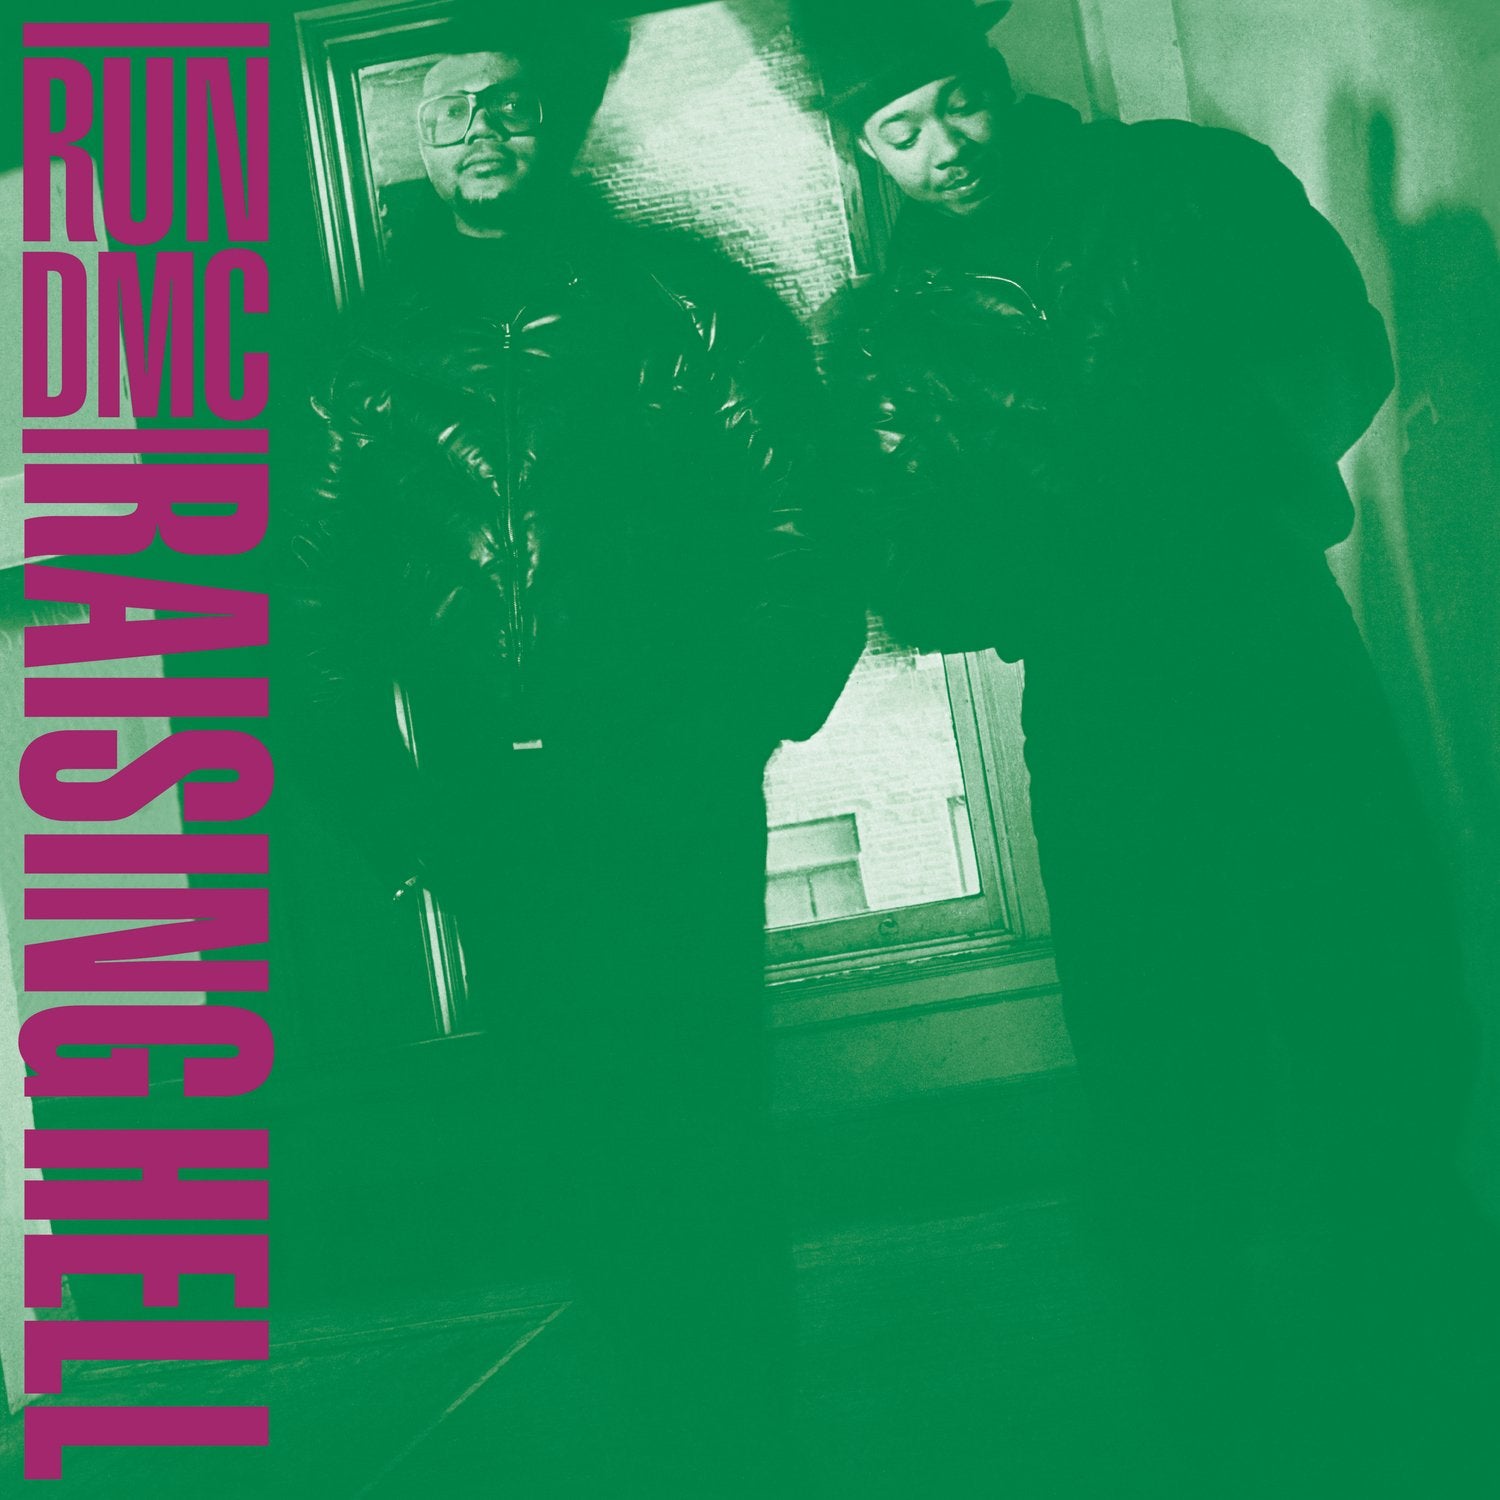 RUN DMC - RAISING HELL Vinyl LP